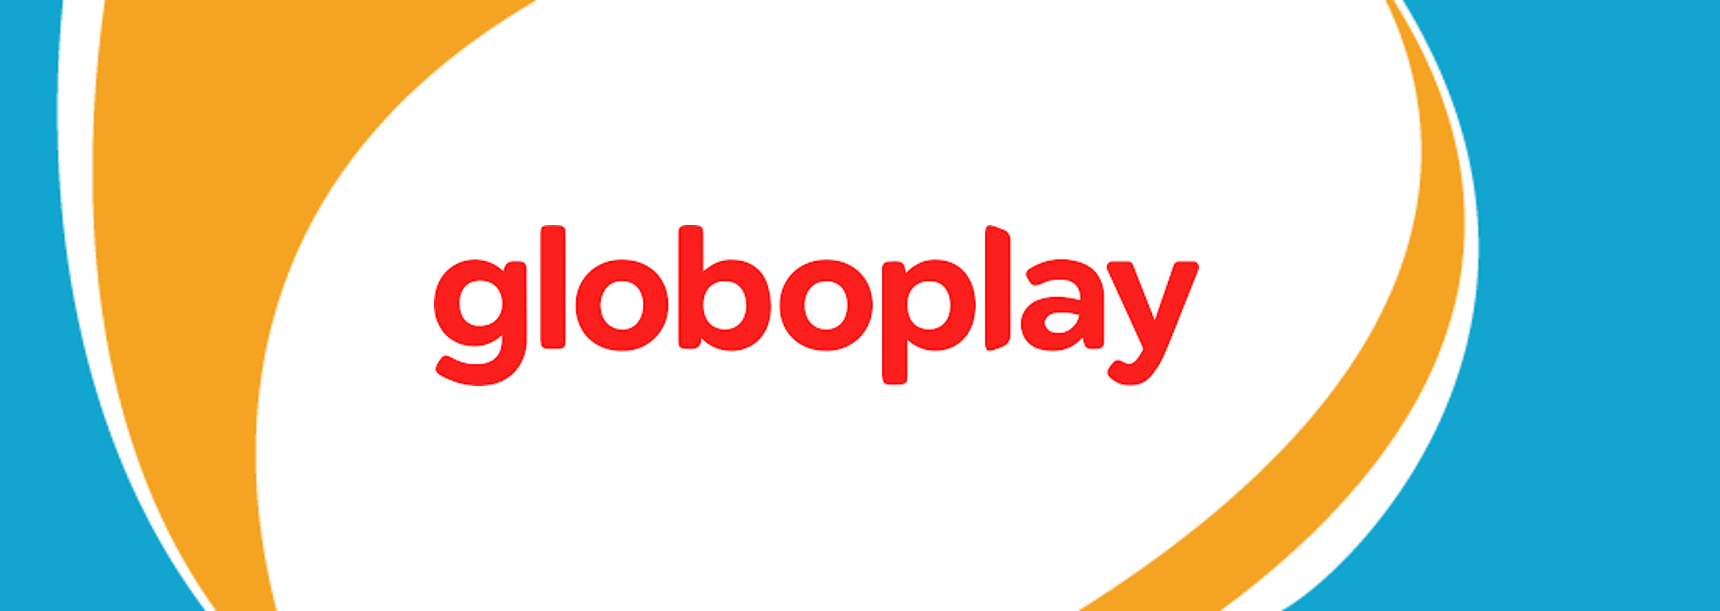 Veja todos os lançamentos do Globoplay em março de 2021